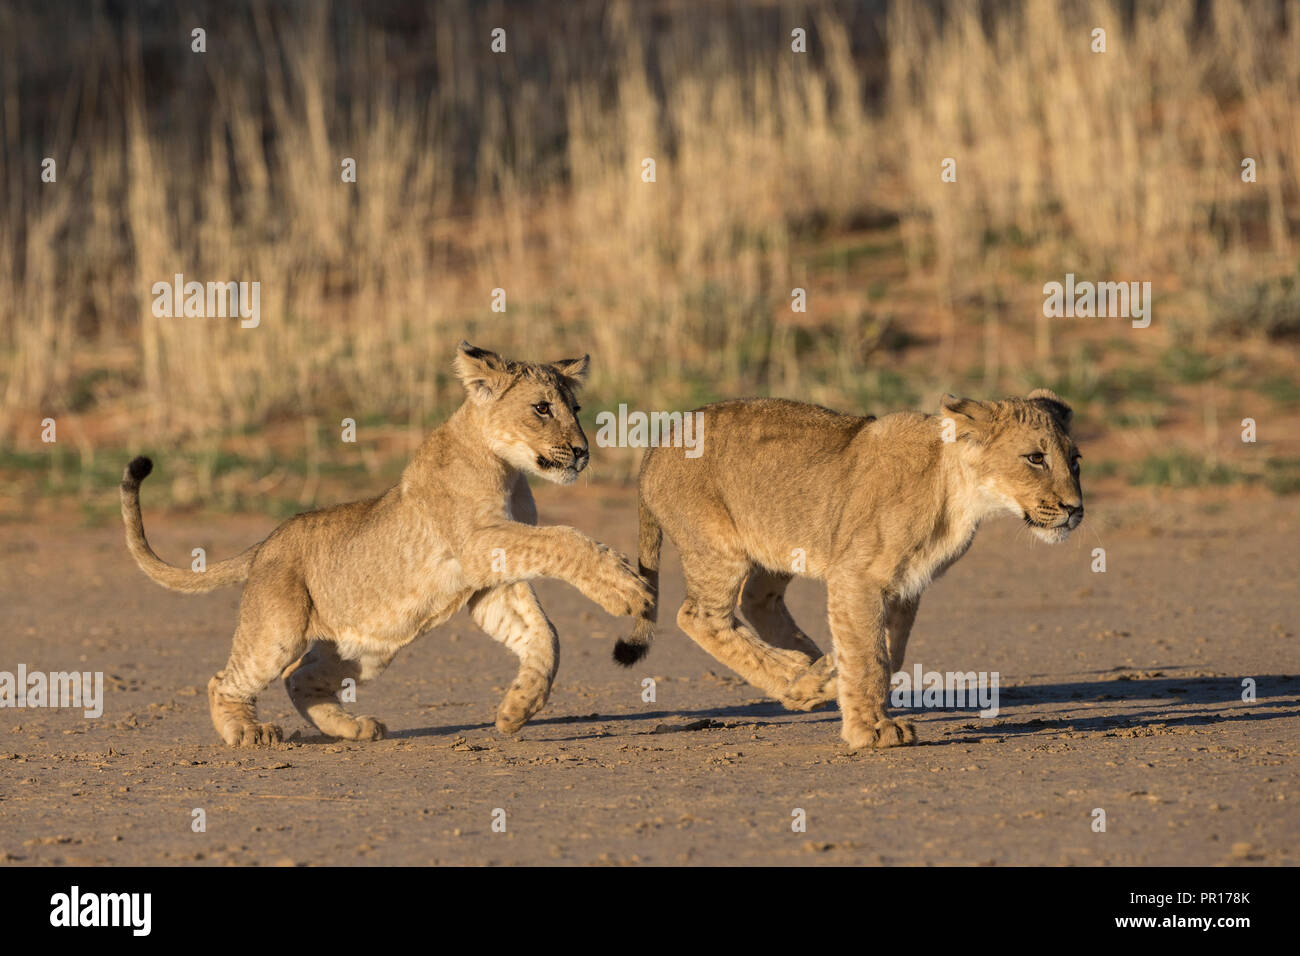 Cachorros de León (Panthera leo) jugando, el Parque Transfronterizo Kgalagadi, Sudáfrica, África Foto de stock